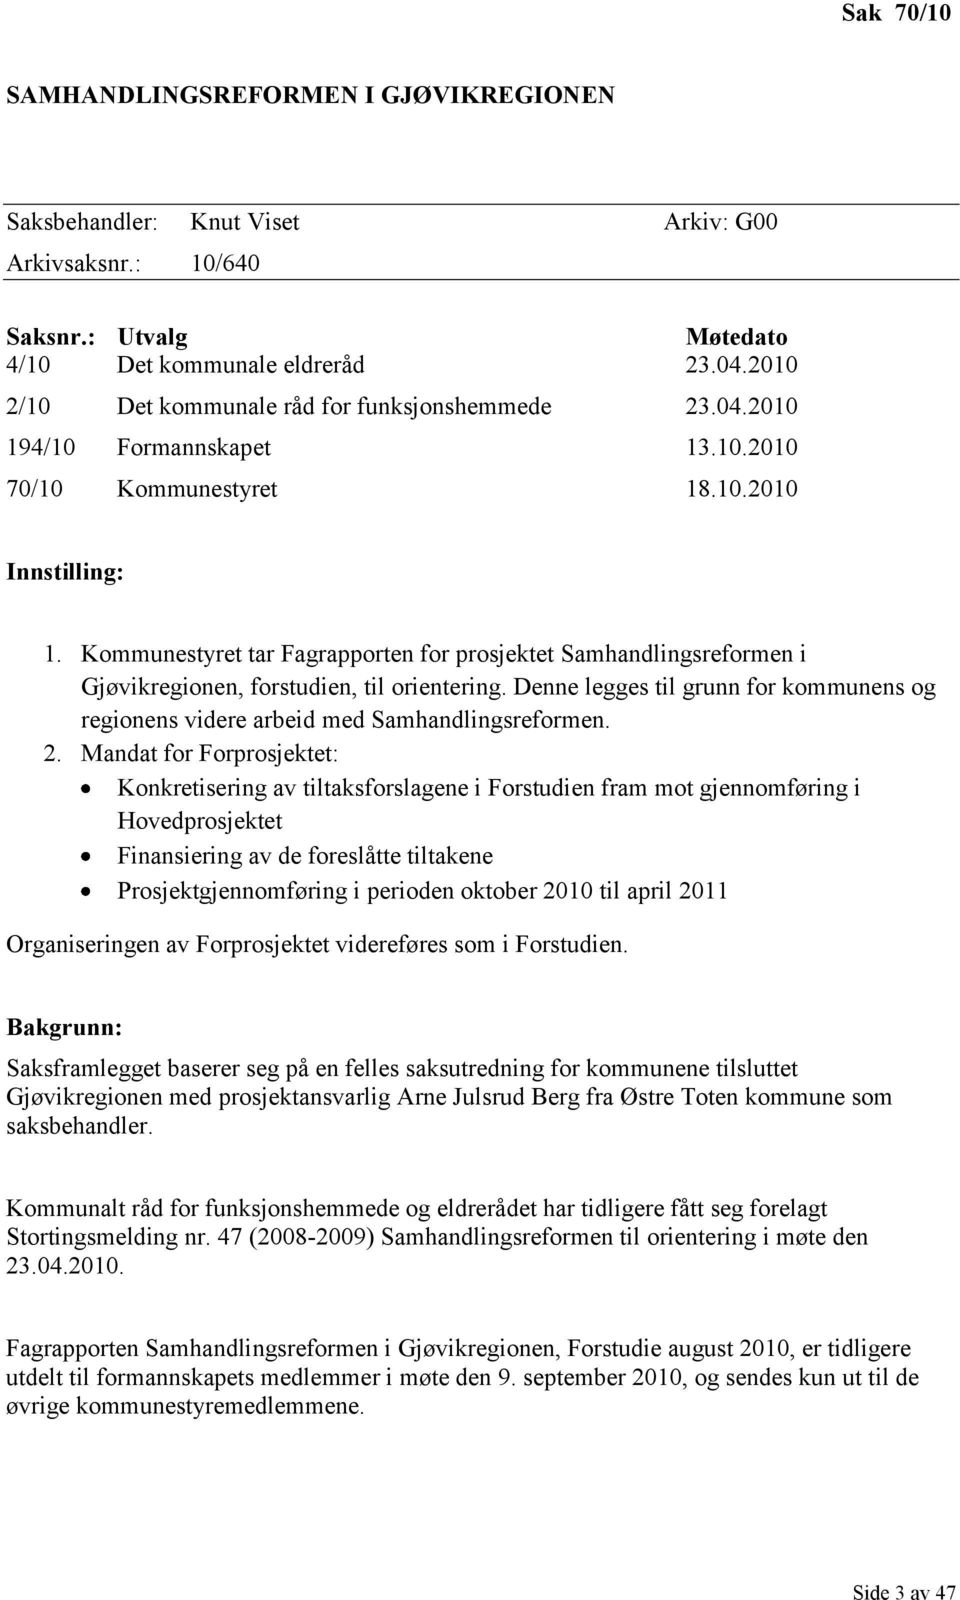 Kommunestyret tar Fagrapporten for prosjektet Samhandlingsreformen i Gjøvikregionen, forstudien, til orientering.